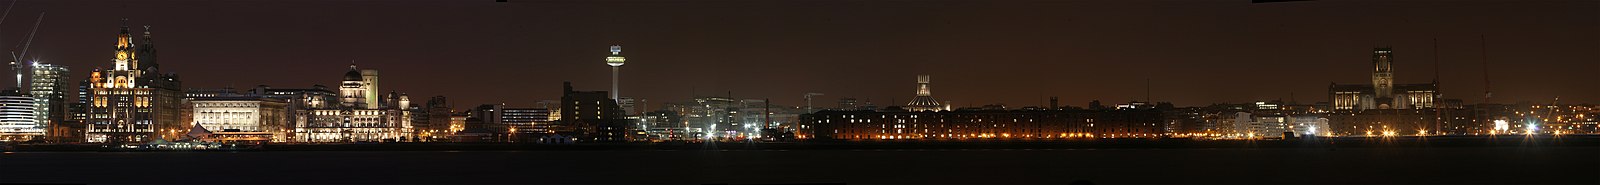 Een nachtelijke panorama van Liverpool gezien vanaf het schiereiland de Wirral